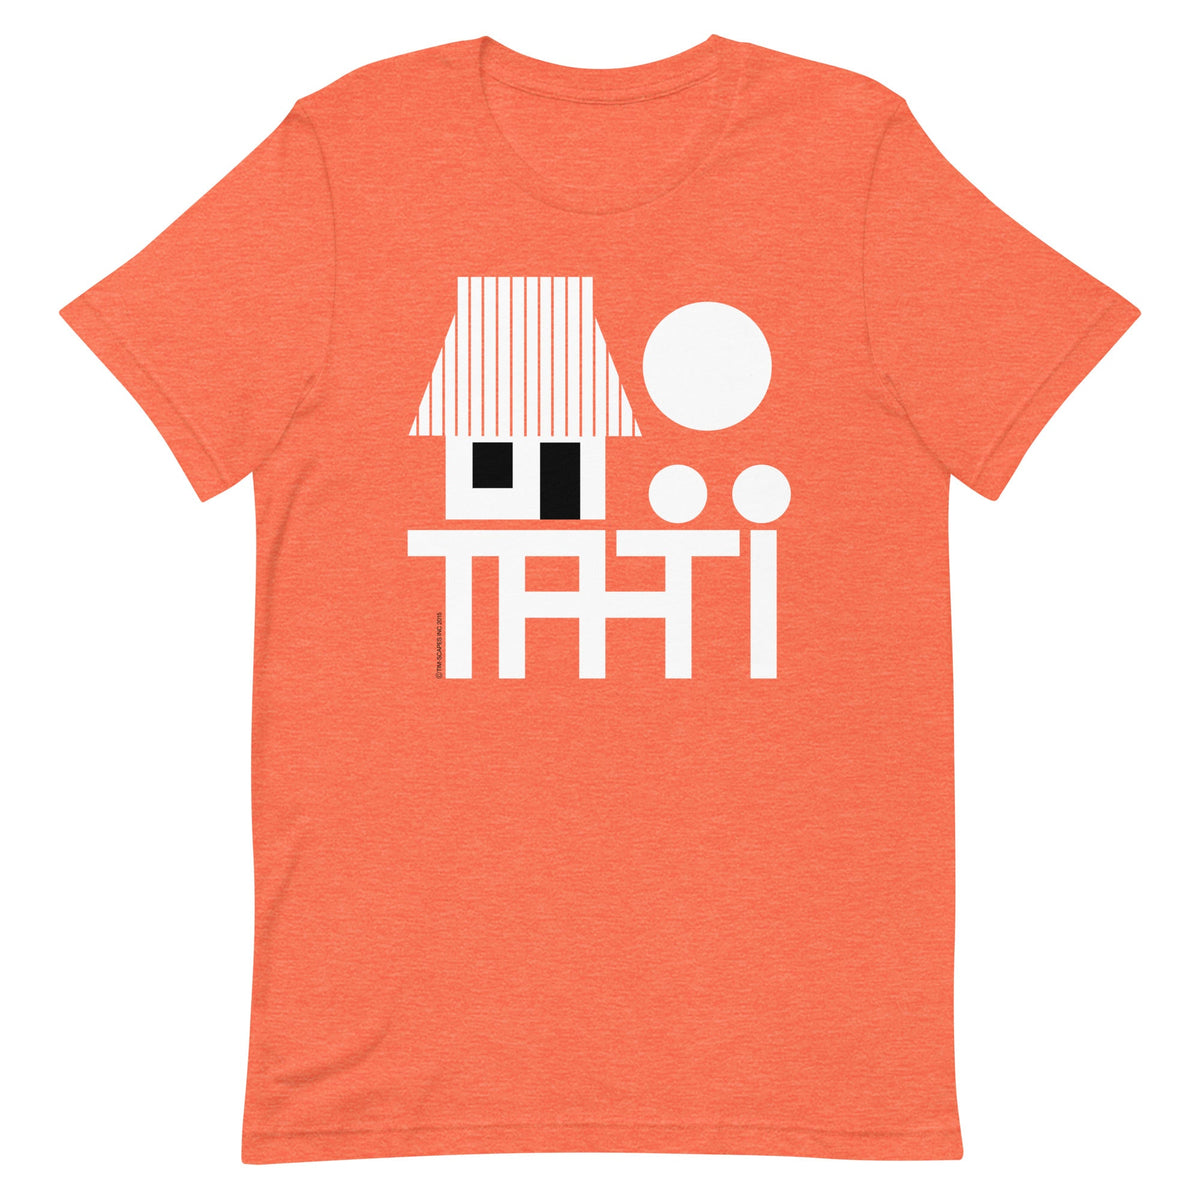 Tahiti / Tee T-Shirt